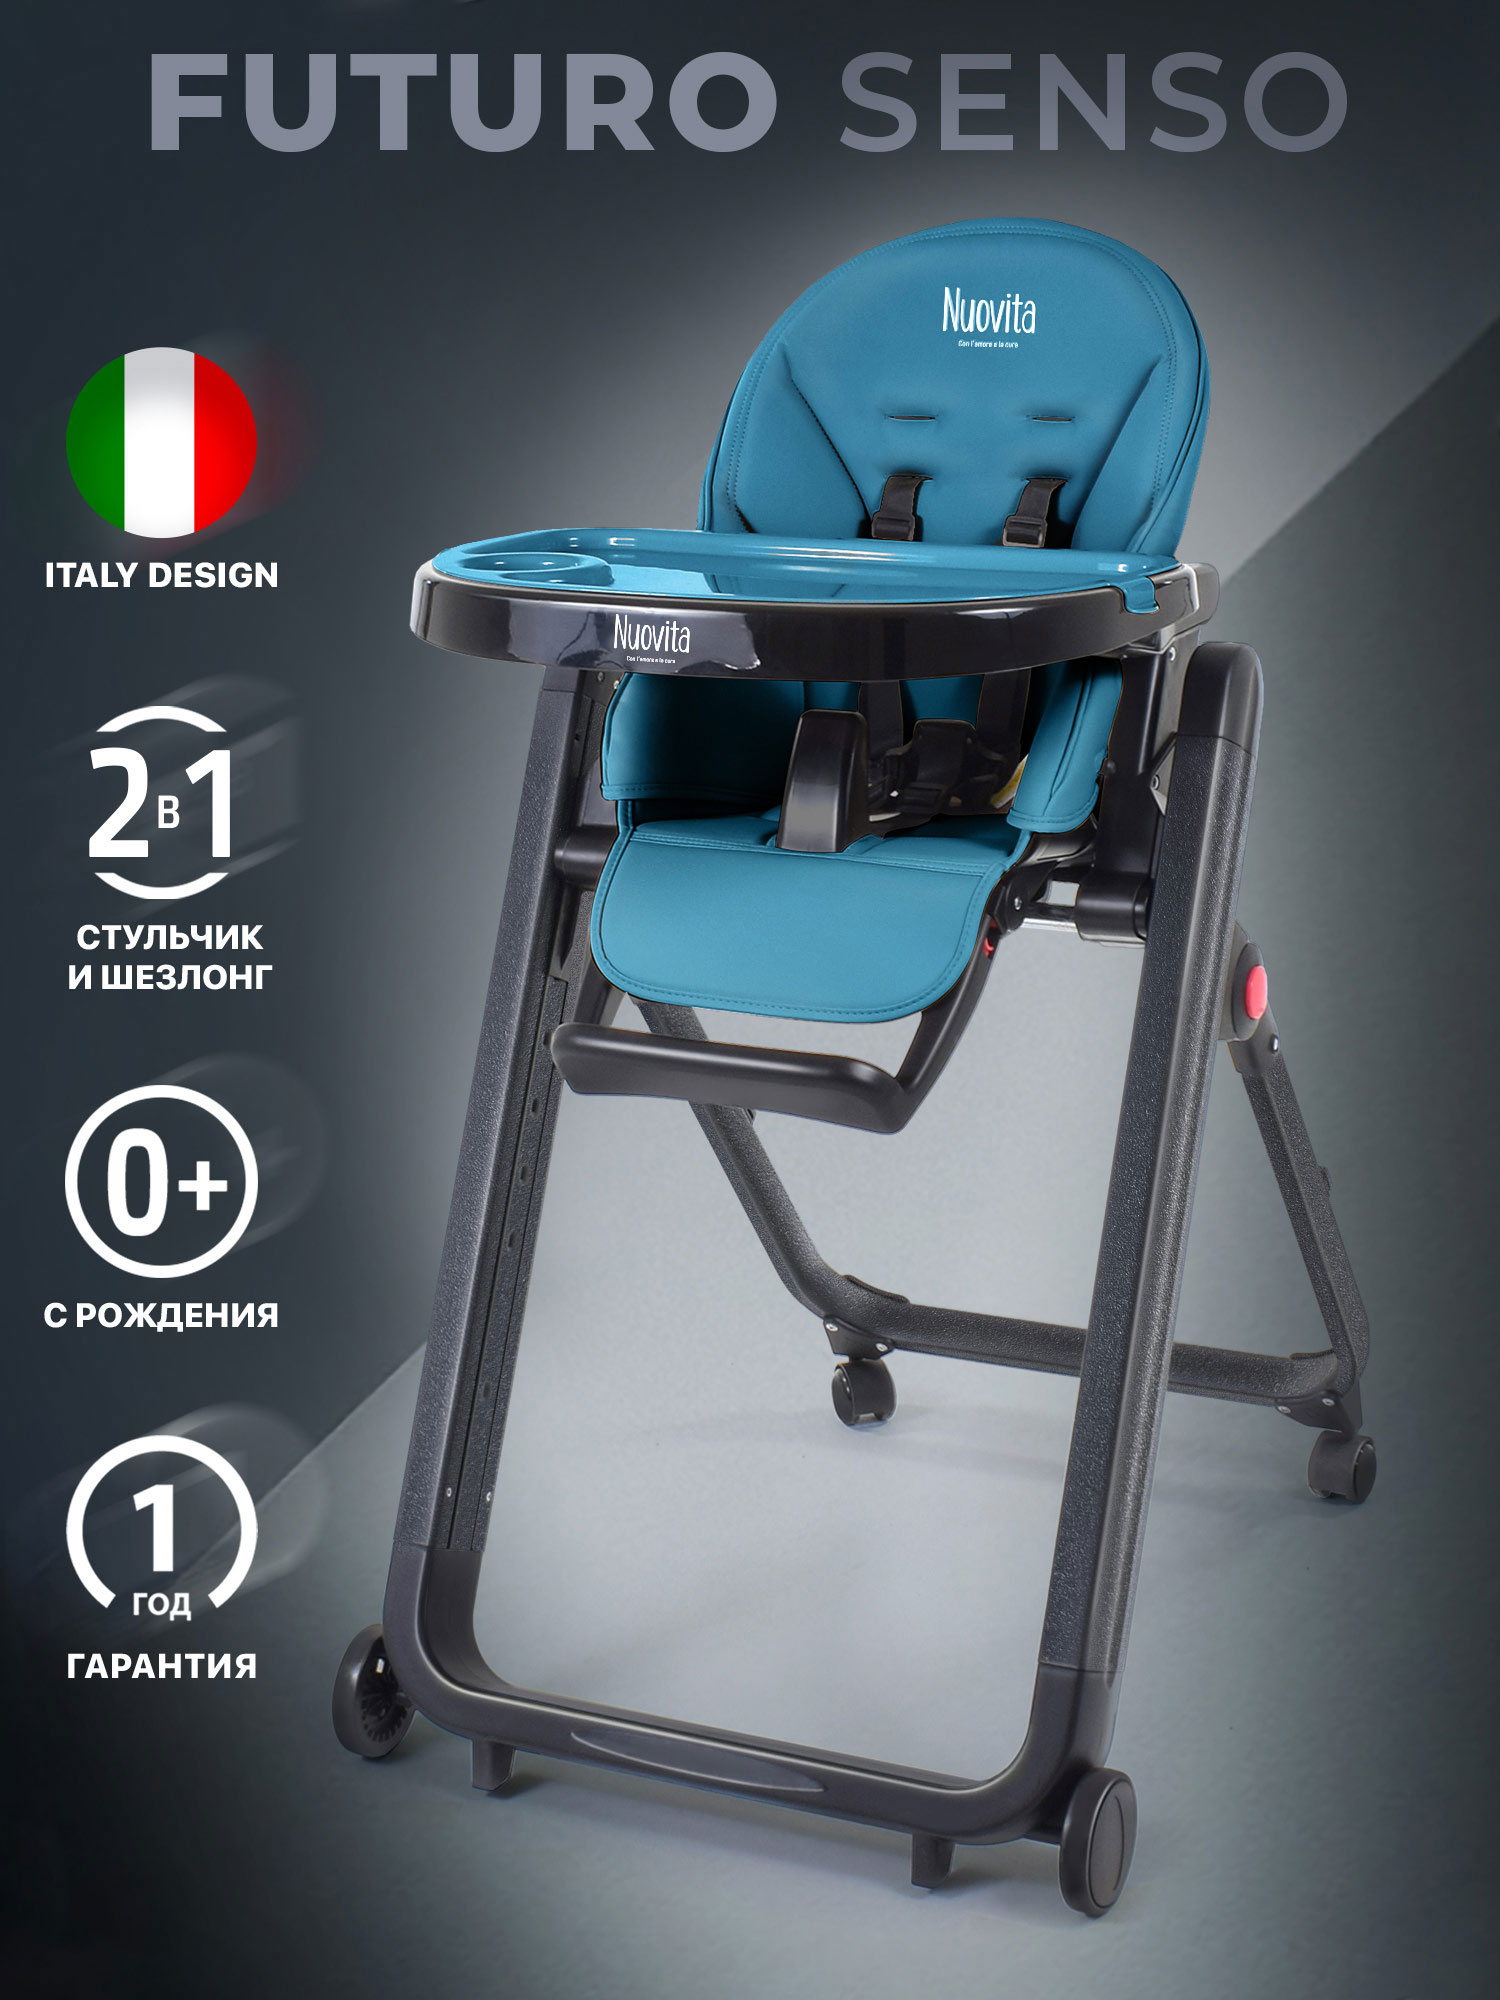 Стульчик для кормления Nuovita Futuro Senso Nero (Marino/Морской) стульчик для кормления nuovita futuro senso bianco marino морской